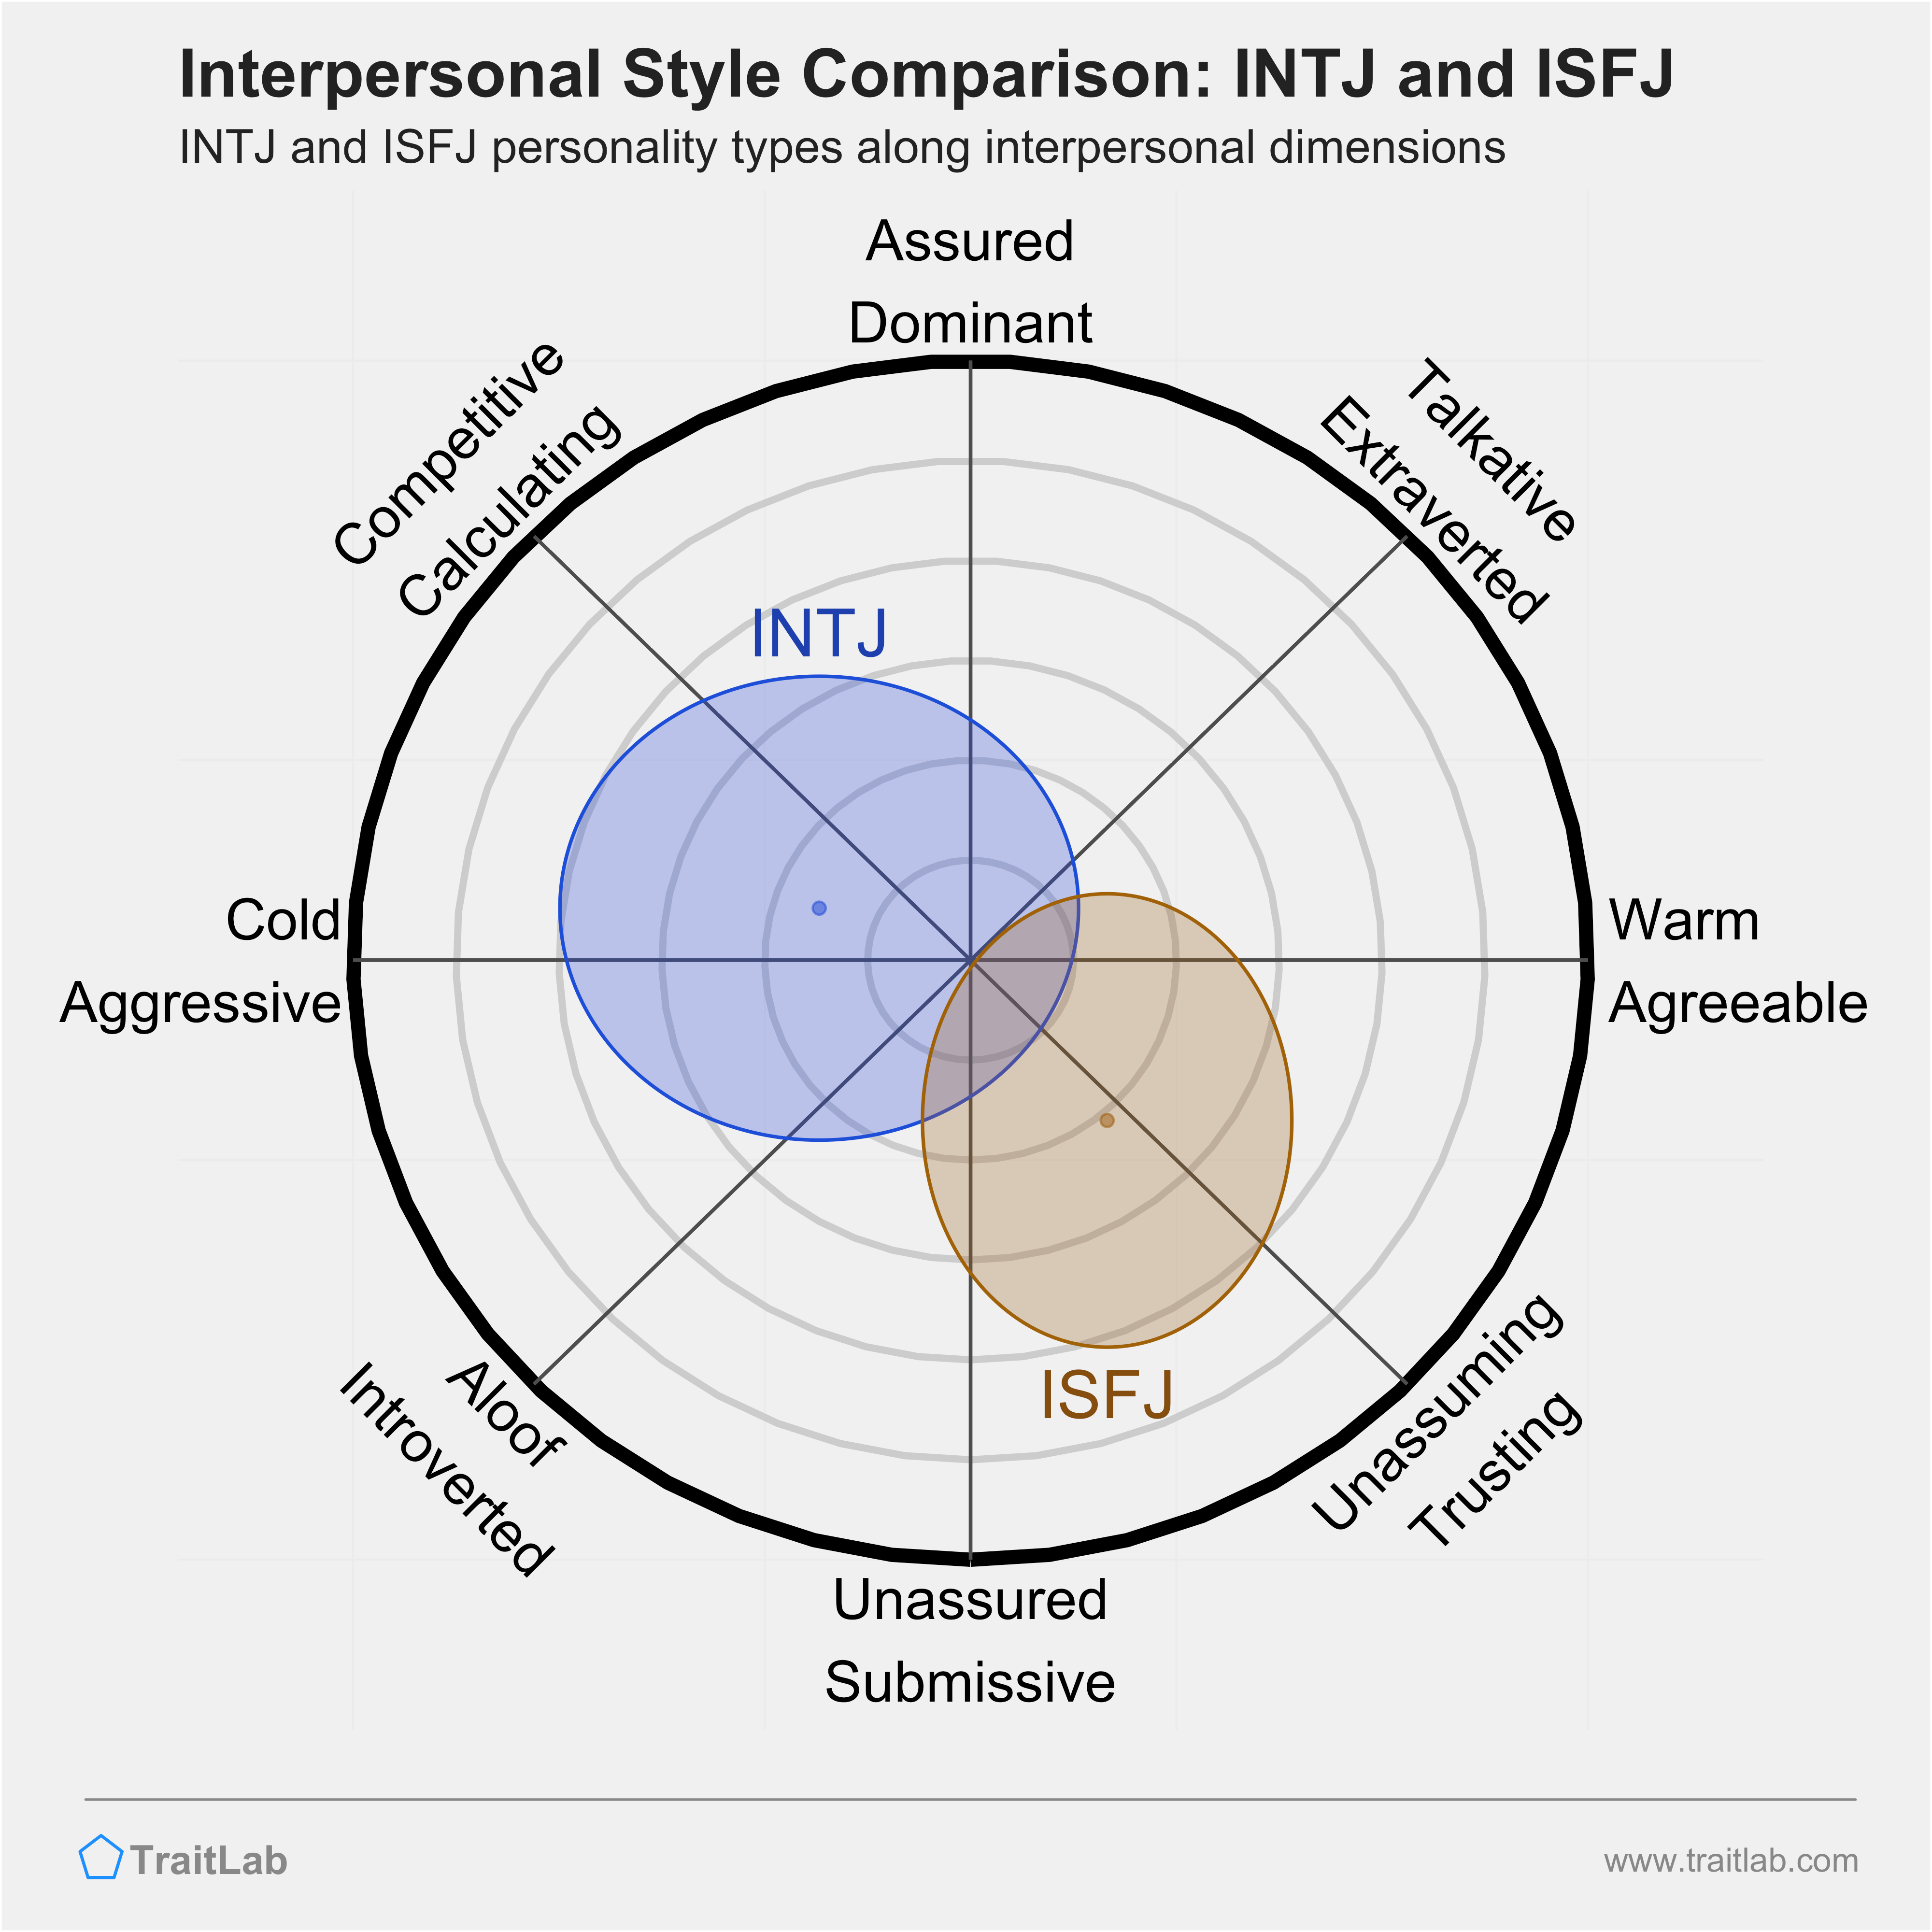 INTJ and ISFJ comparison across interpersonal dimensions